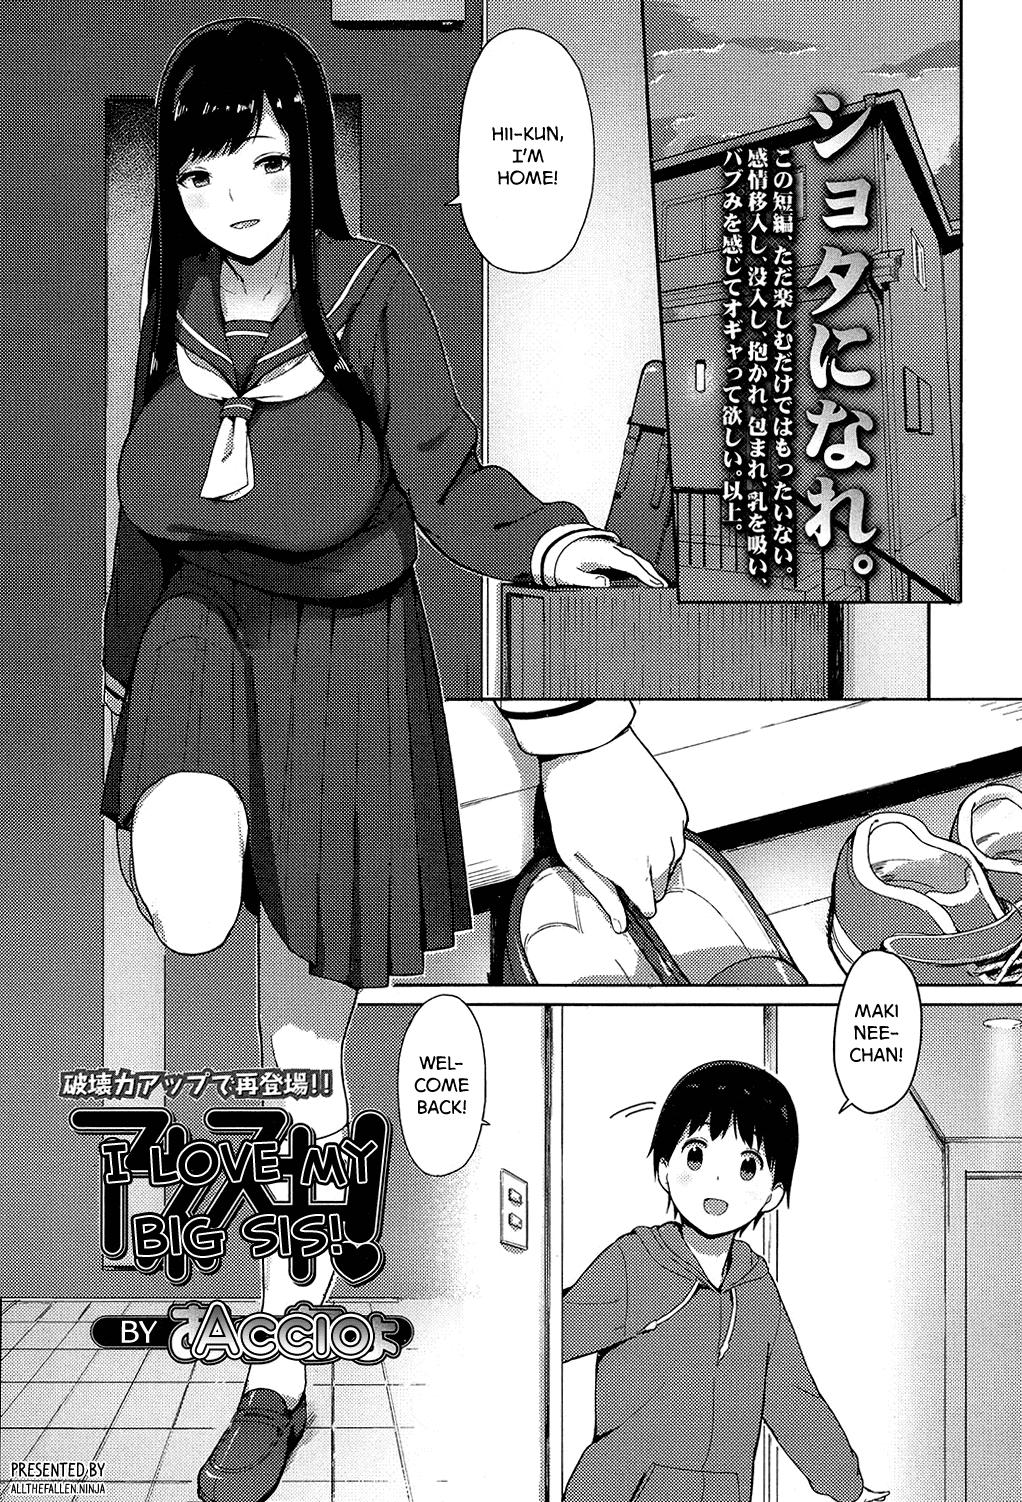 Sister hentai manga